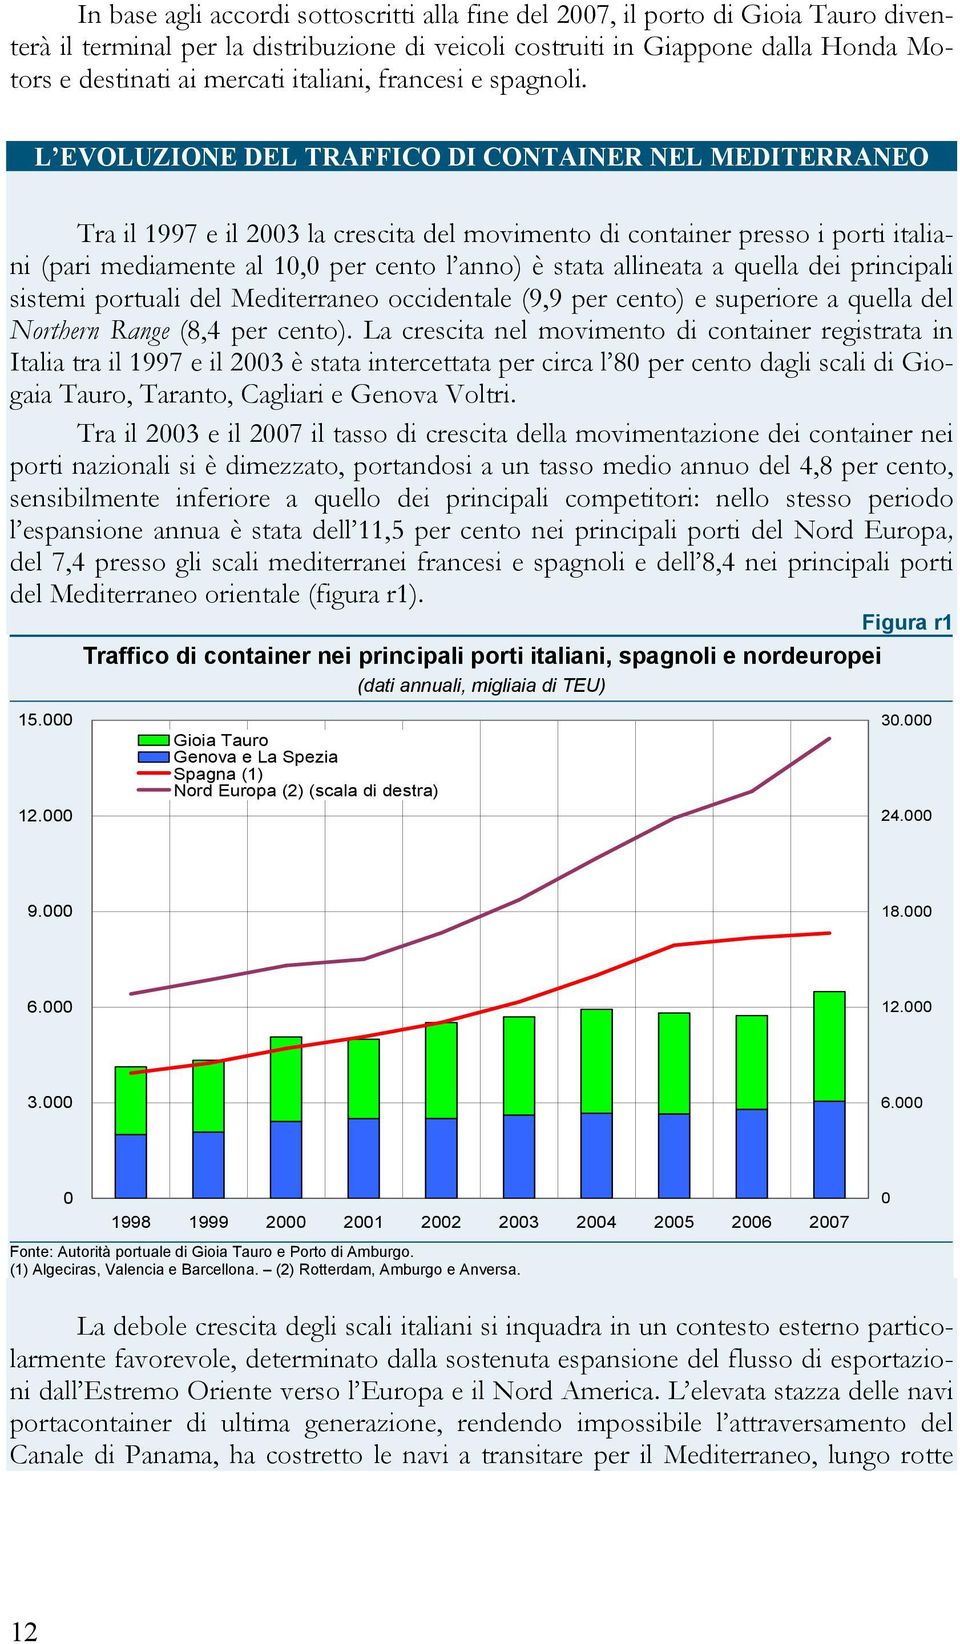 L EVOLUZIONE DEL TRAFFICO DI CONTAINER NEL MEDITERRANEO Tra il 1997 e il 2003 la crescita del movimento di container presso i porti italiani (pari mediamente al 10,0 per cento l anno) è stata